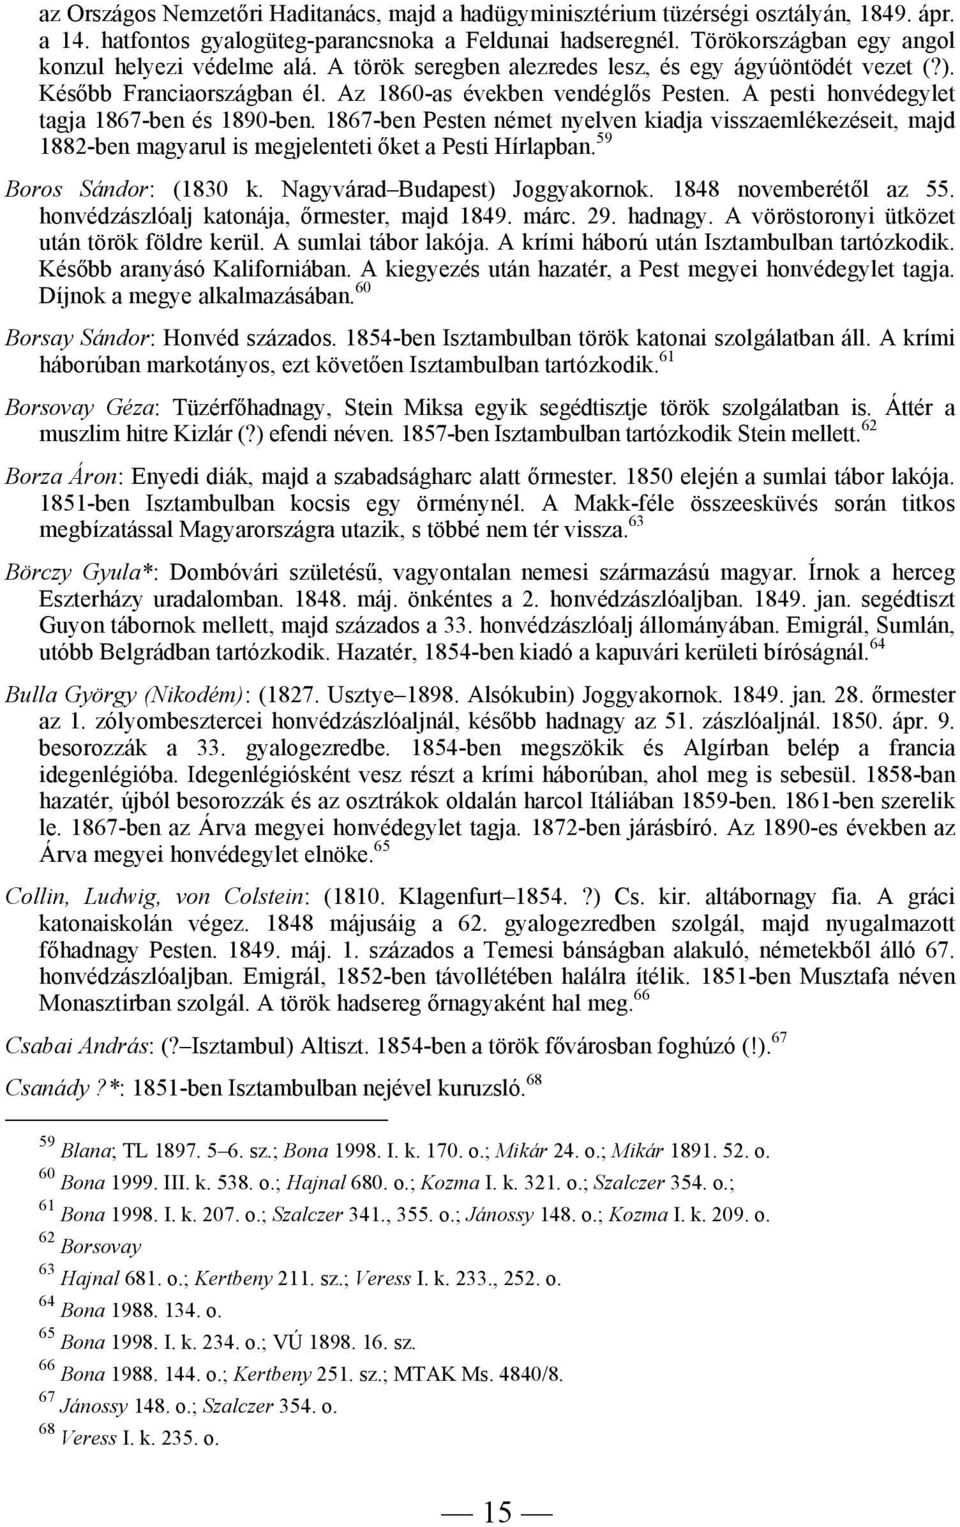 A pesti honvédegylet tagja 1867-ben és 1890-ben. 1867-ben Pesten német nyelven kiadja visszaemlékezéseit, majd 1882-ben magyarul is megjelenteti őket a Pesti Hírlapban. 59 Boros Sándor: (1830 k.